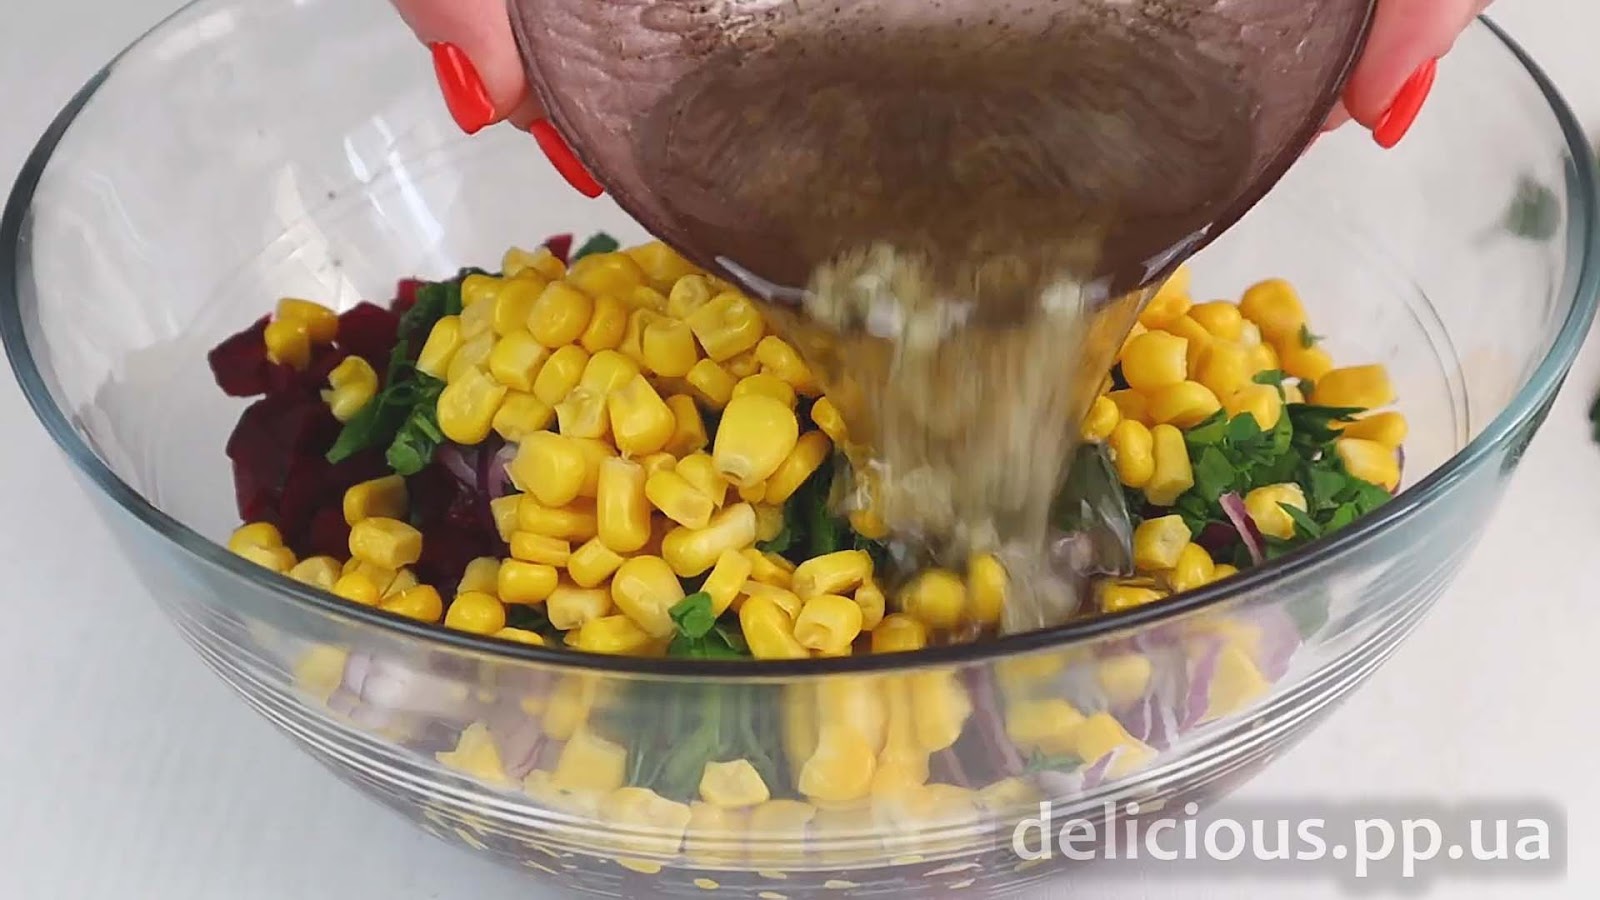 Фото приготовления рецепта: «Легкий салат из свеклы с консервированной кукурузой» - шаг №5